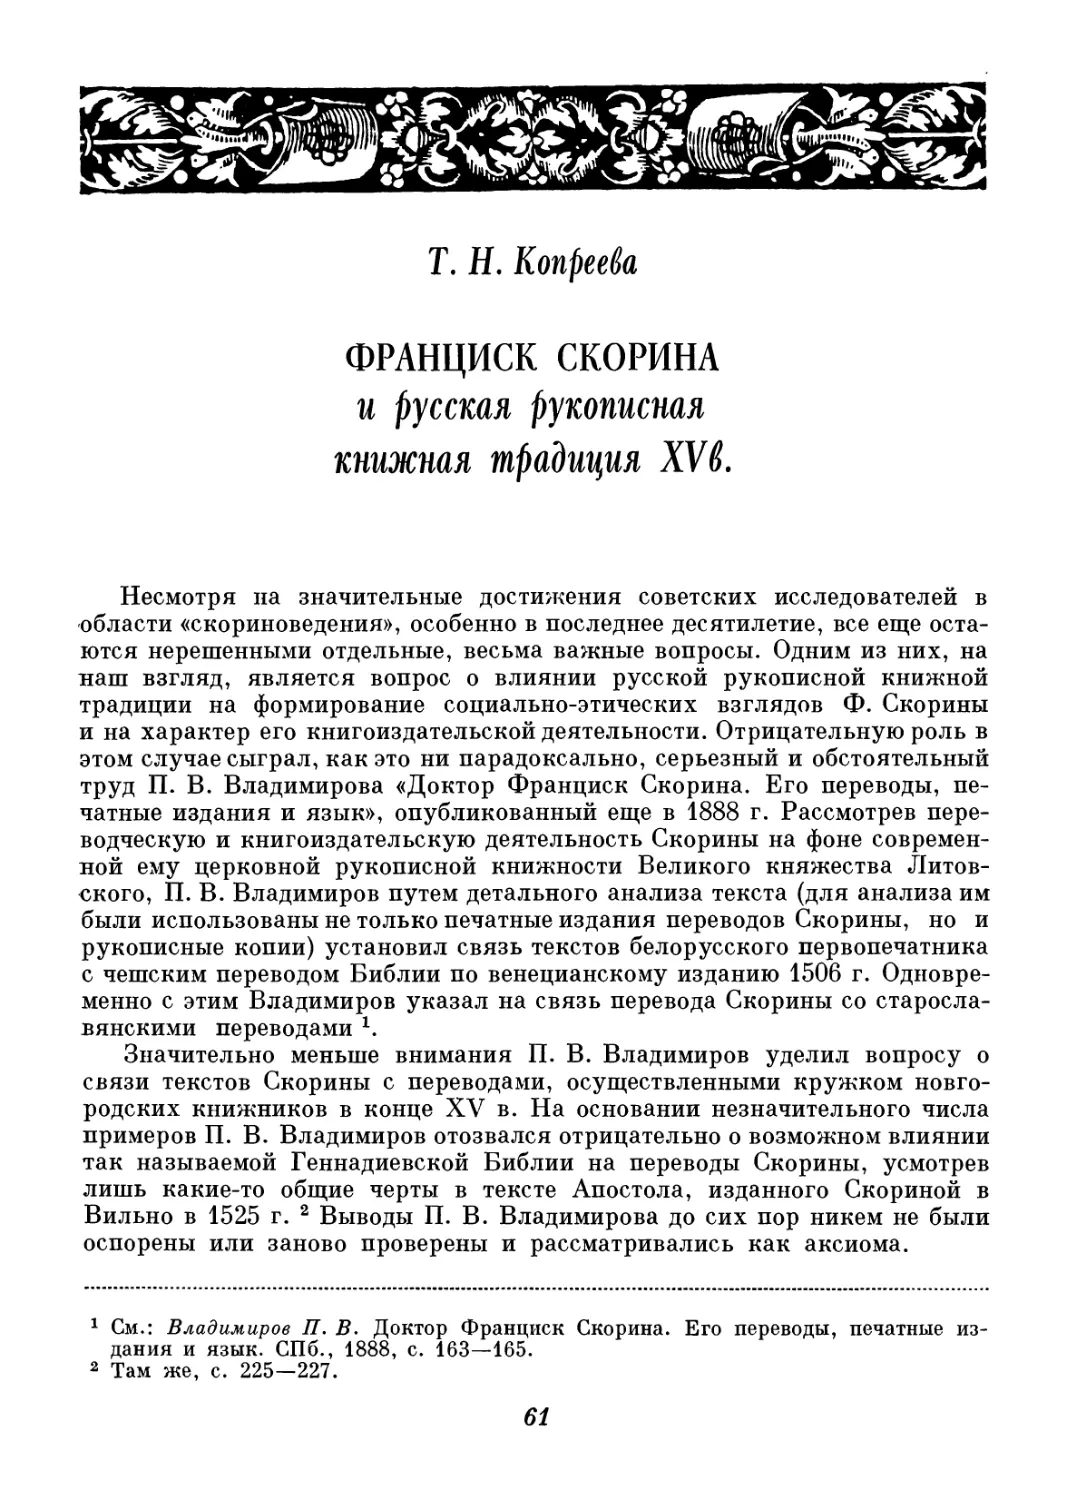 Т. Д. Копреева - Ф. Скорина и русская рукописная книжная традиция XV в.